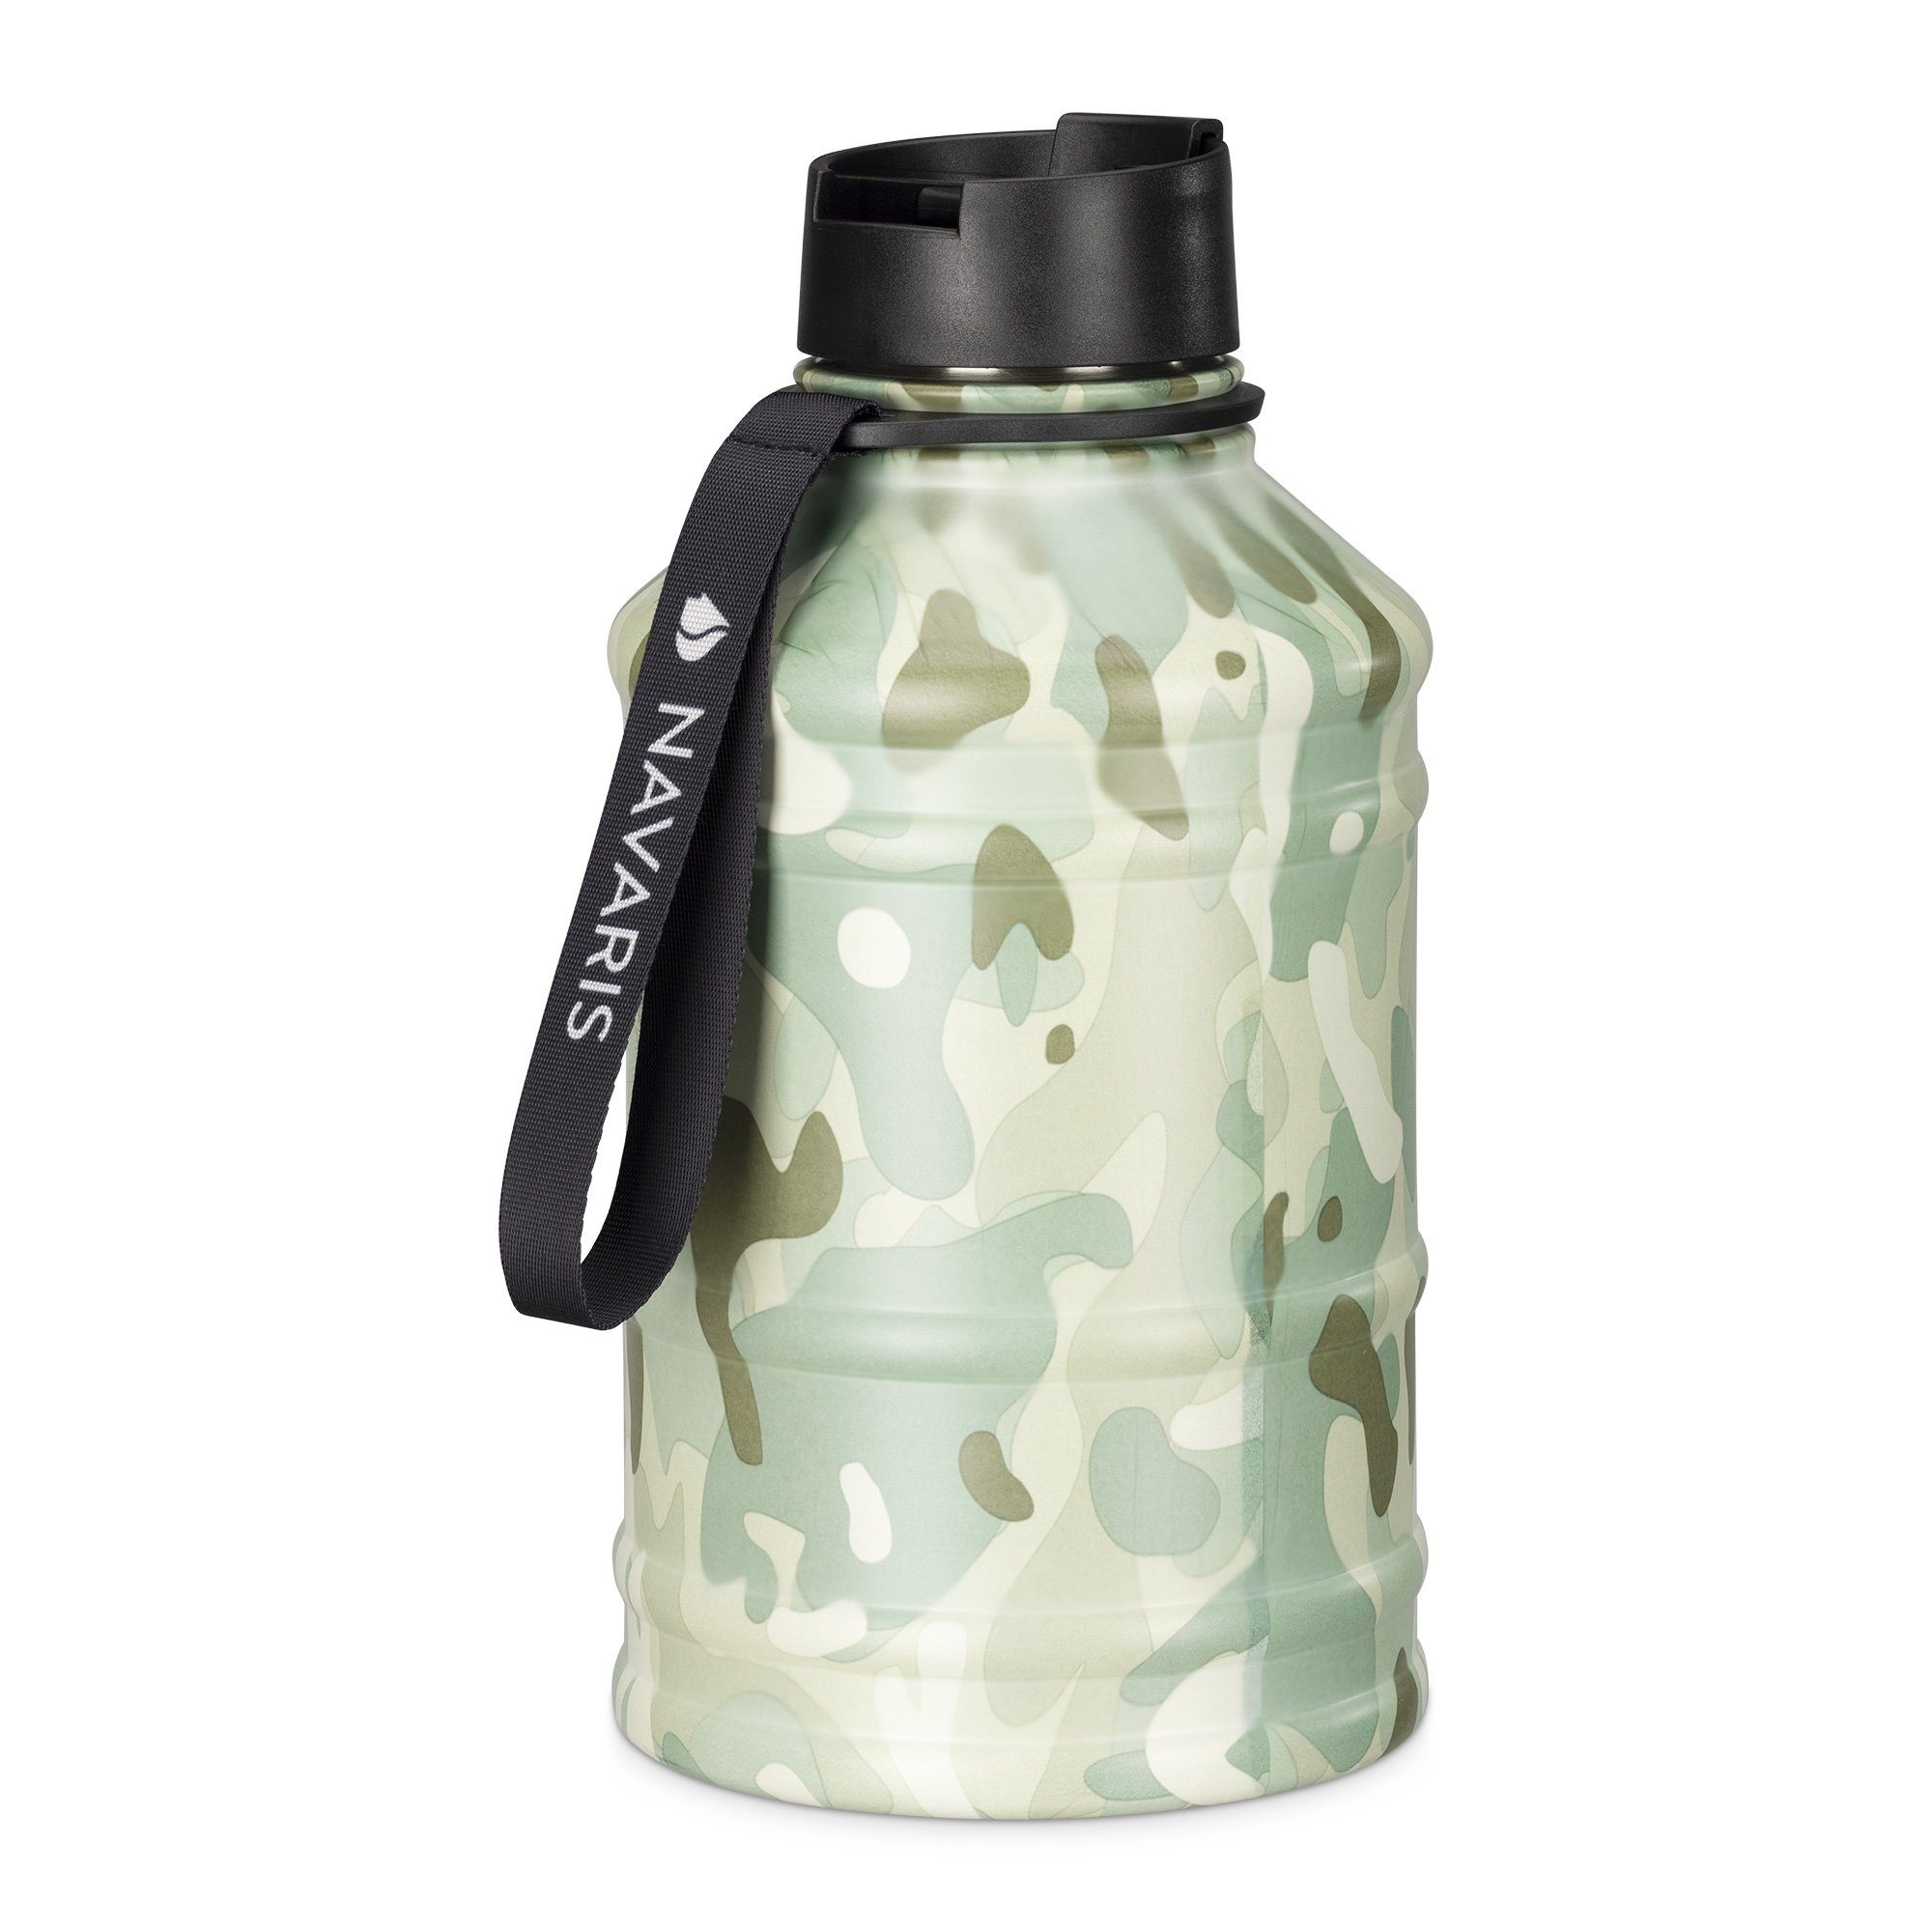 Navaris Trinkflasche XXL Trinkflasche 2,2l aus Edelstahl, Camouflage-Design Grün matt